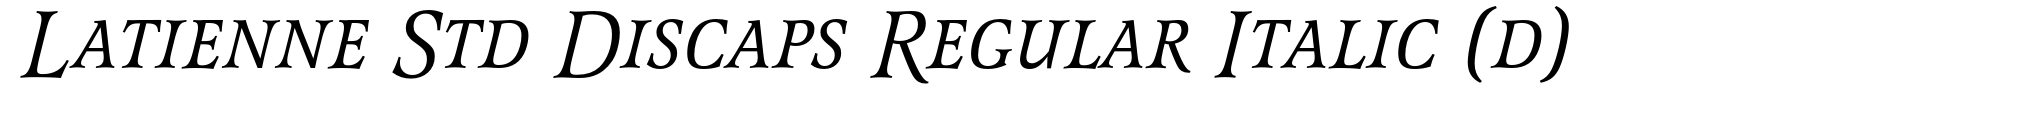 Latienne Std Discaps Regular Italic (d) image